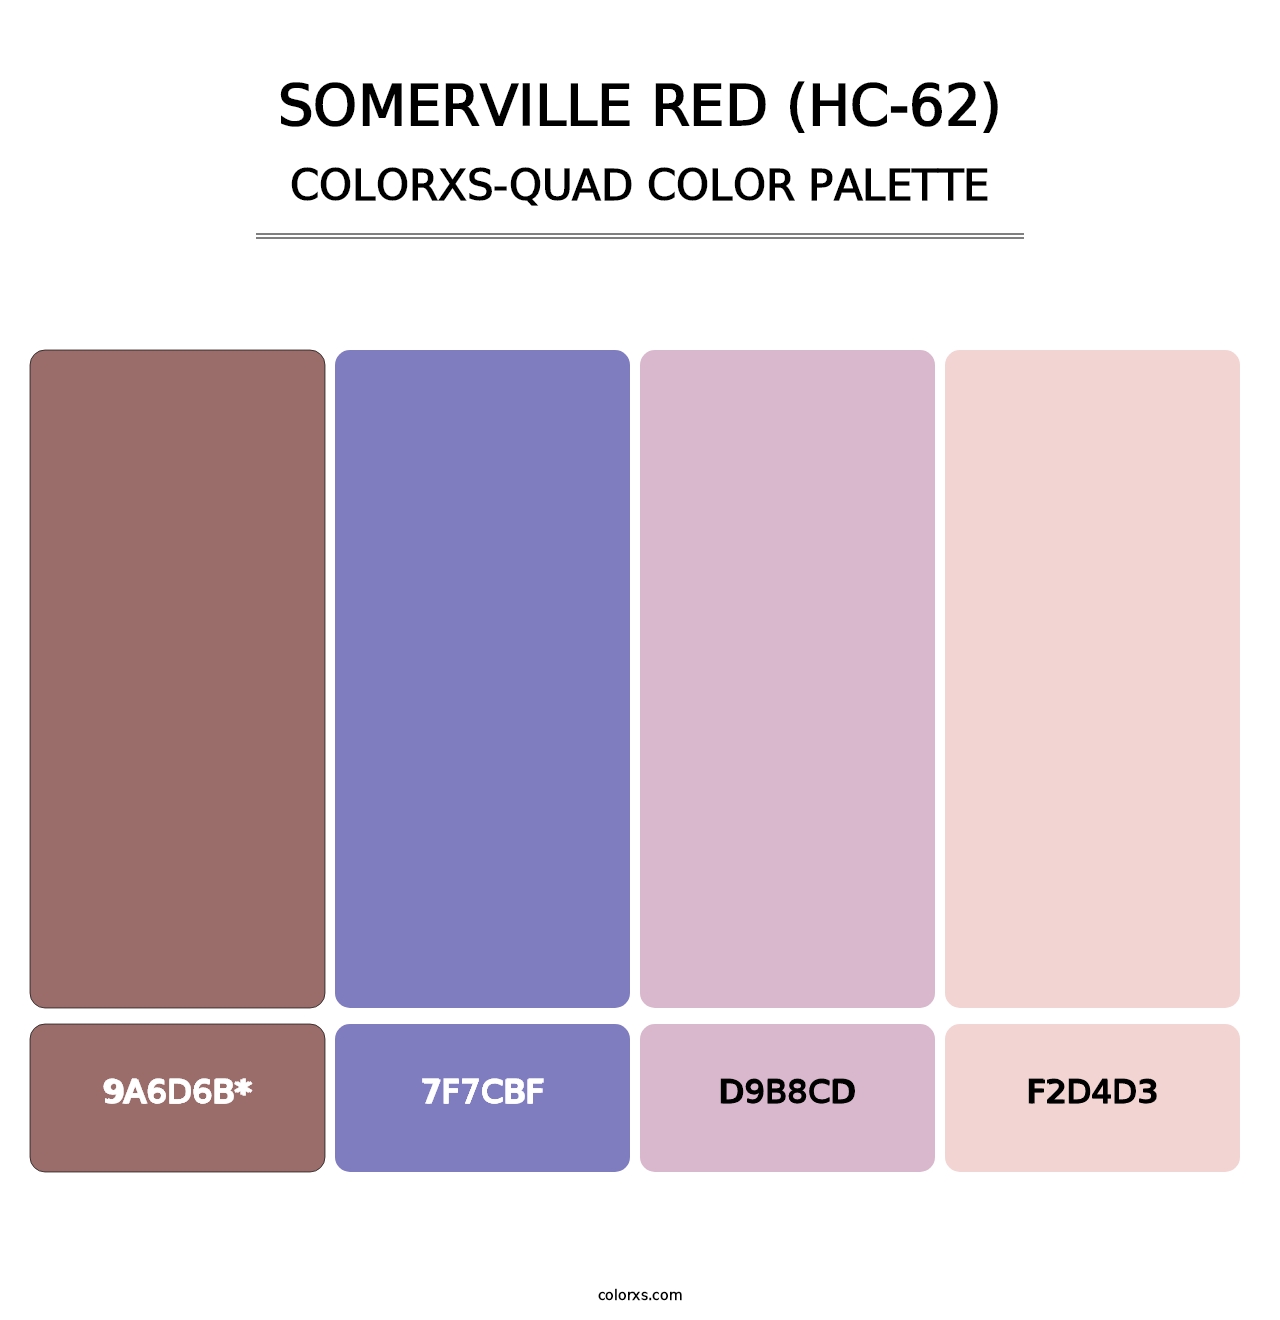 Somerville Red (HC-62) - Colorxs Quad Palette